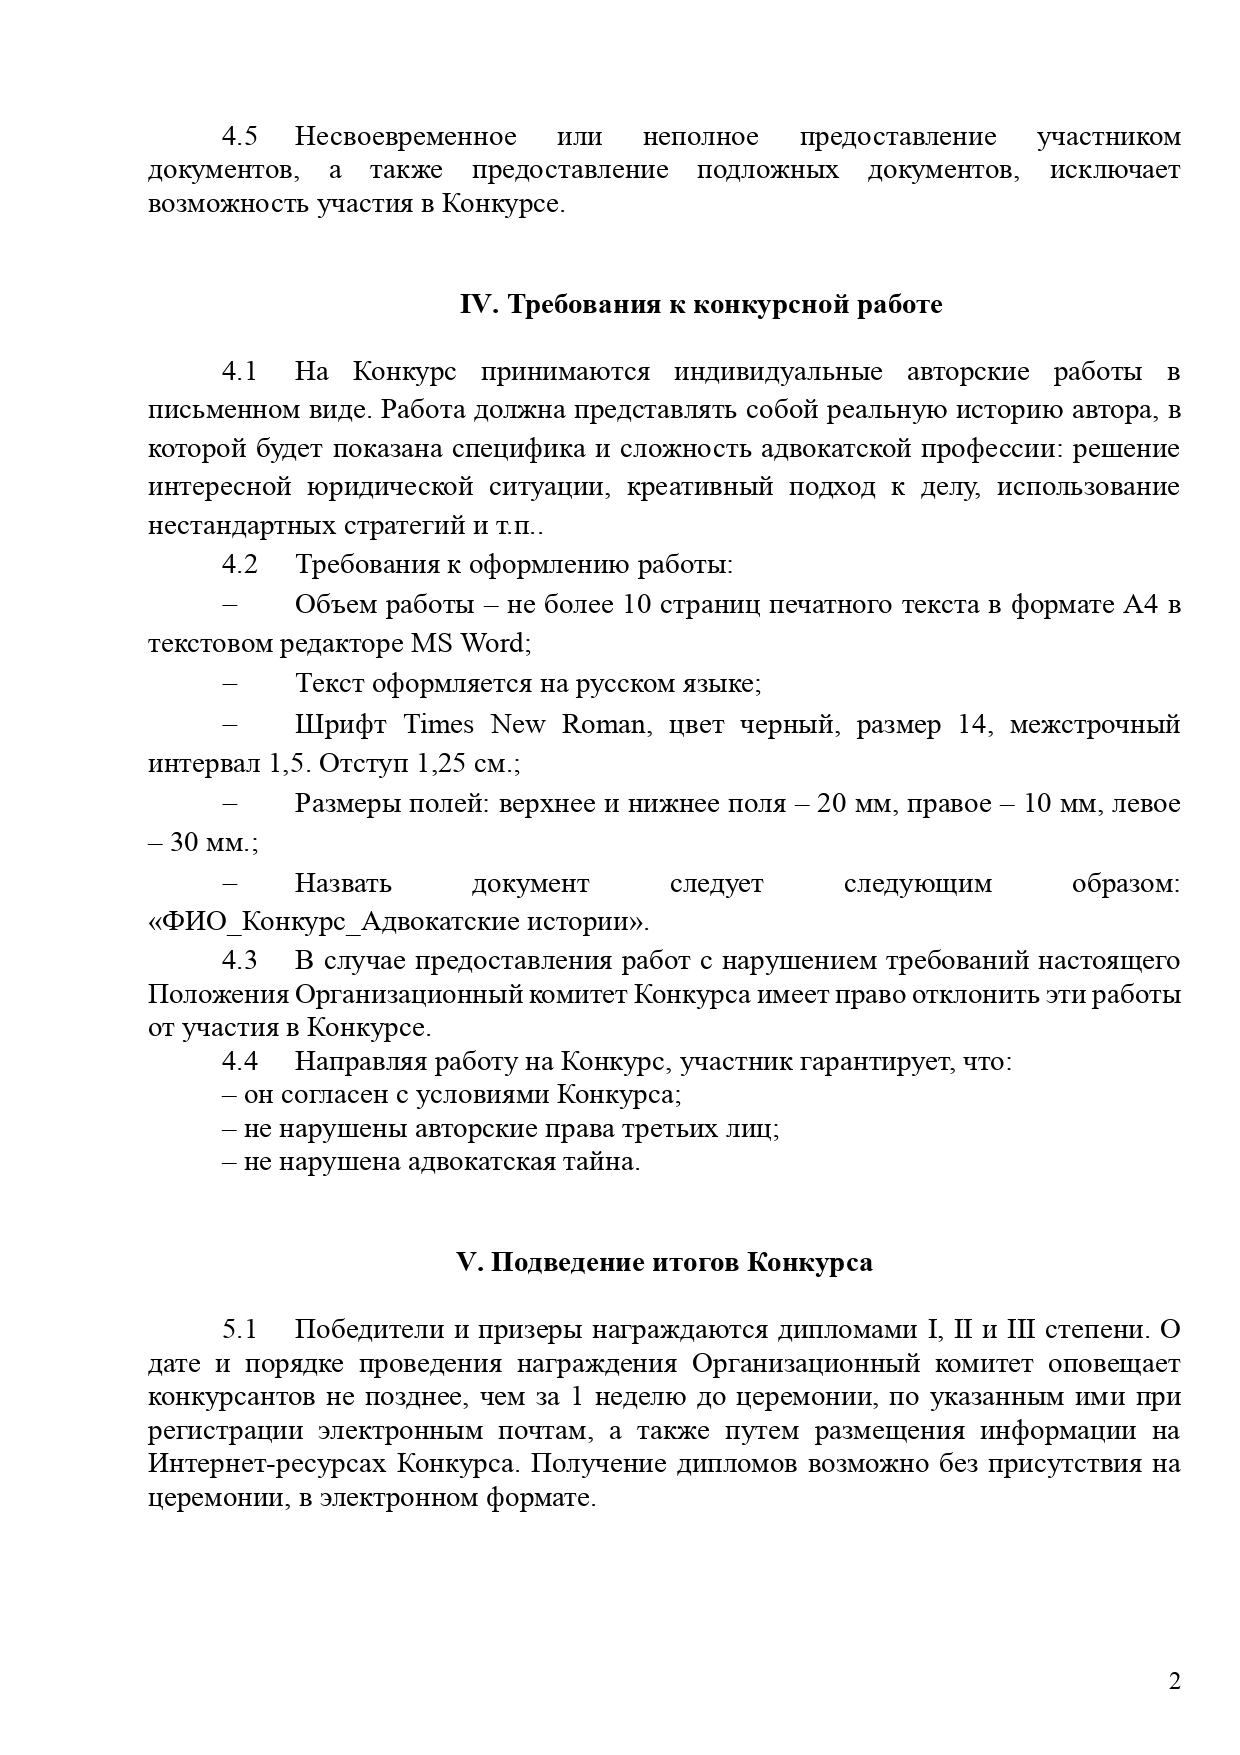 Polozhenie o Vserossijskom konkurse sredi advokatov - Advokatskie istorii_page-0002.jpg